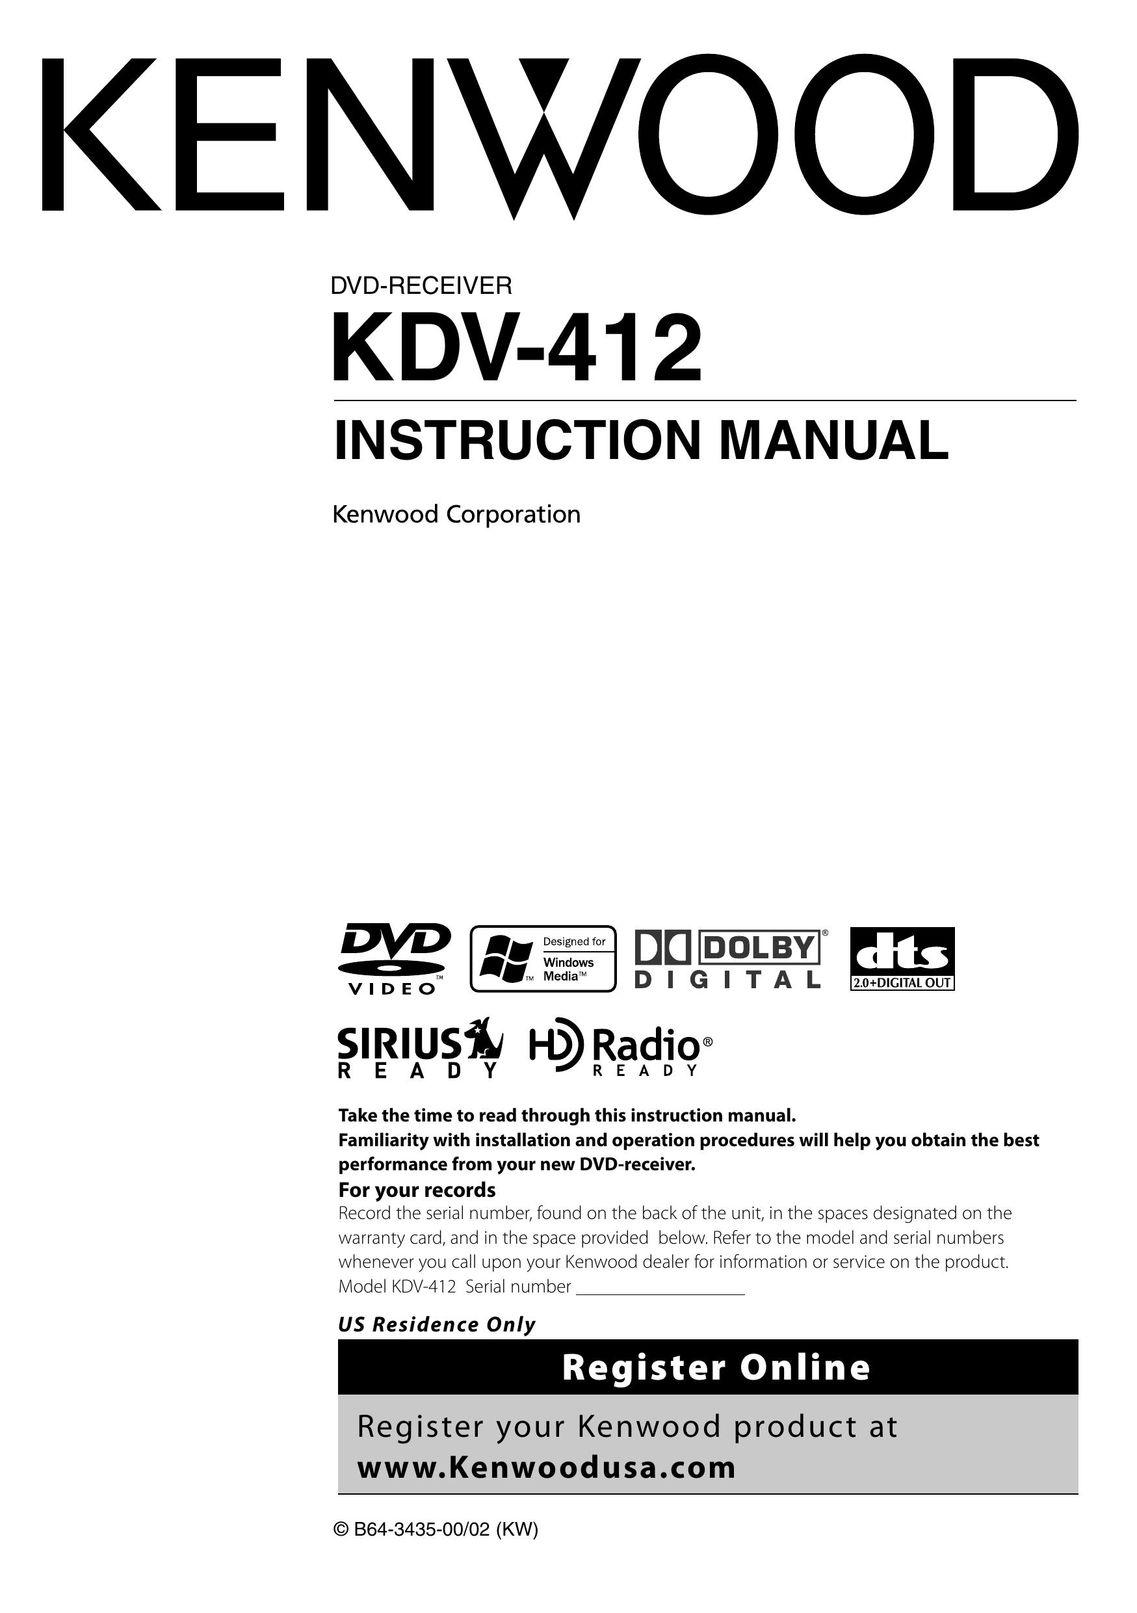 Kenwood KDV-412 DVD Player User Manual